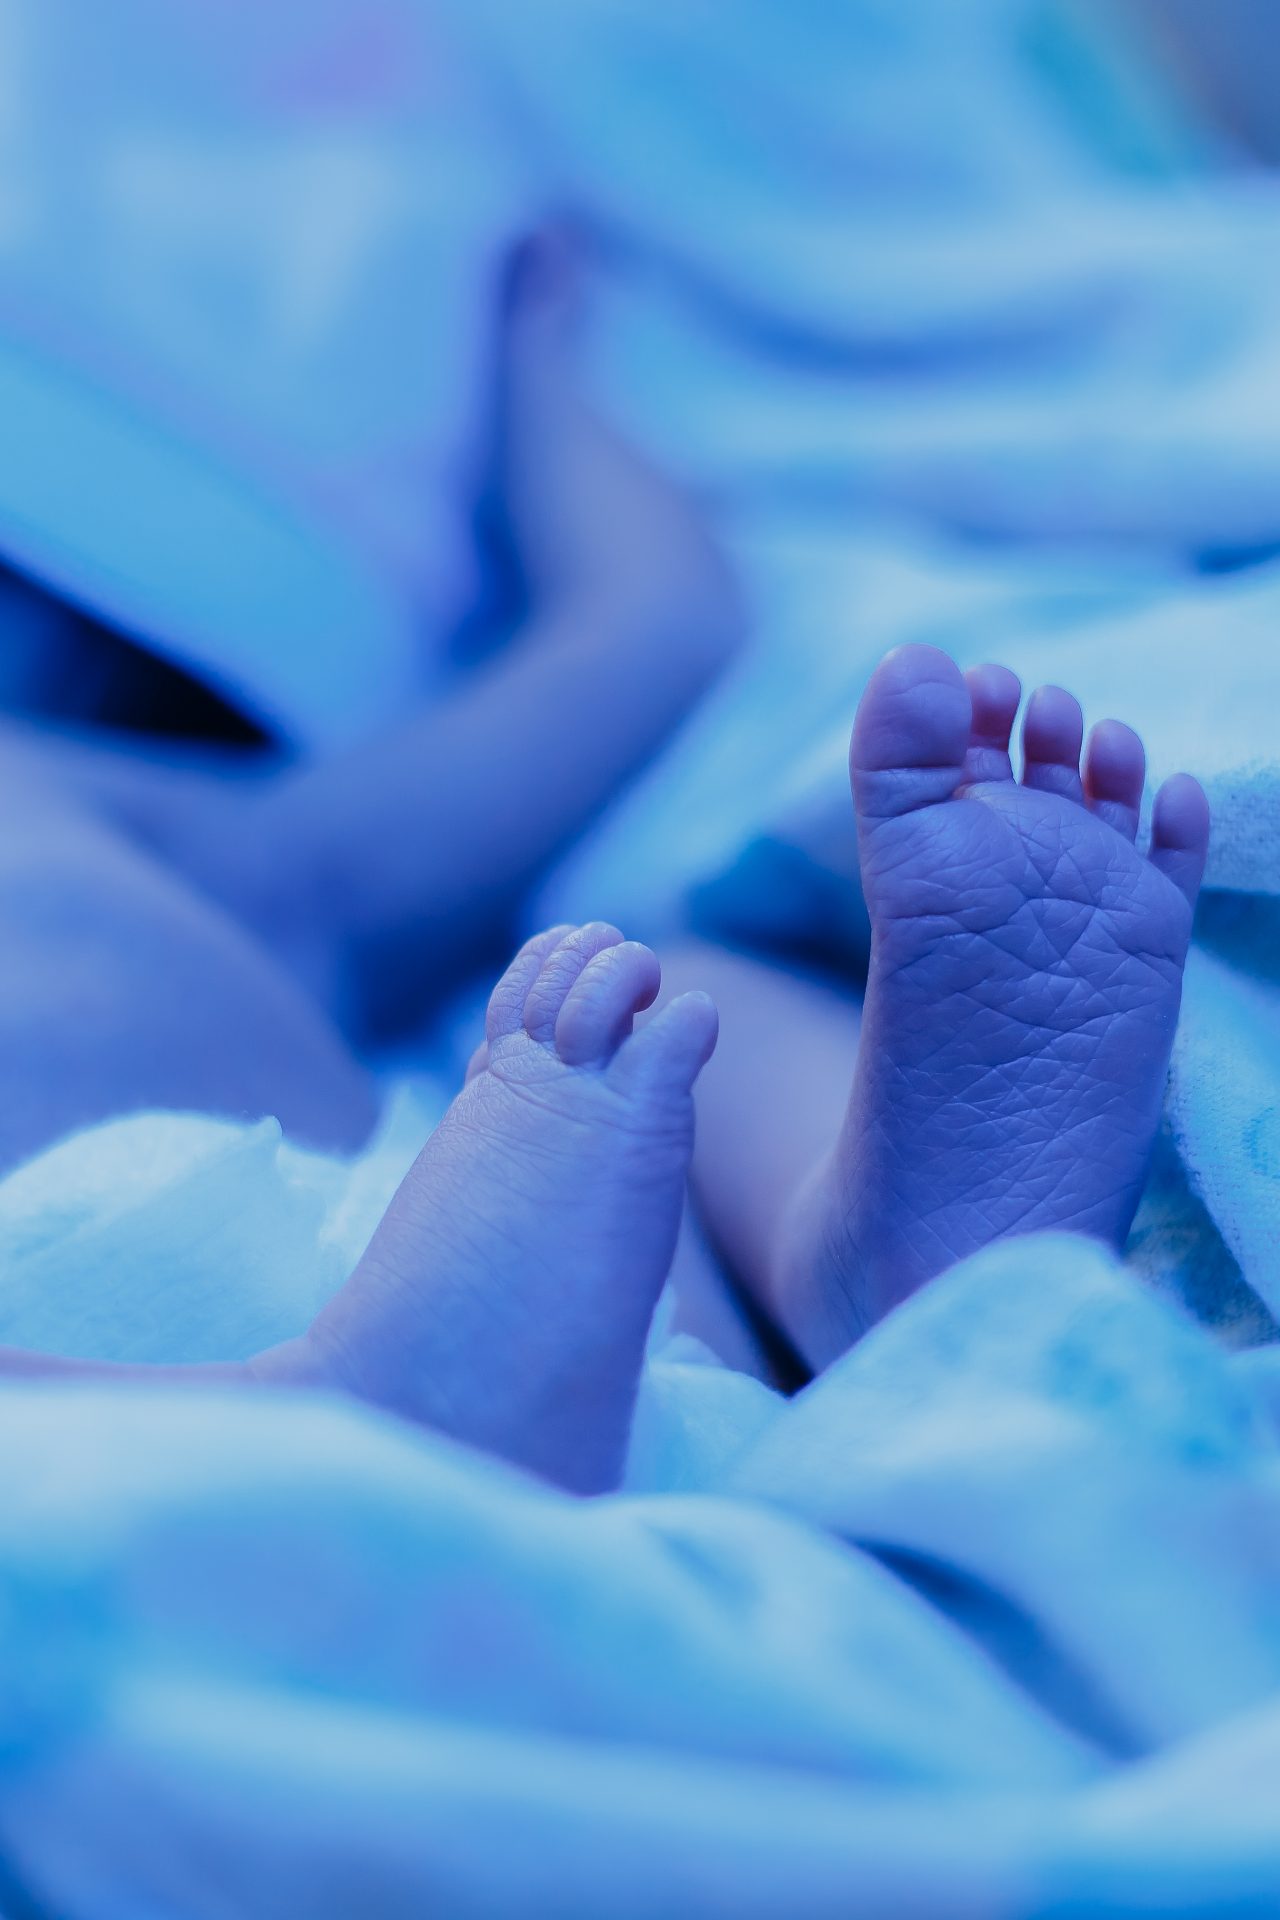 newborn-baby-lying-under-blue-lamp-because-of-bili-2021-09-02-08-01-06-utc-1280x1920.jpg